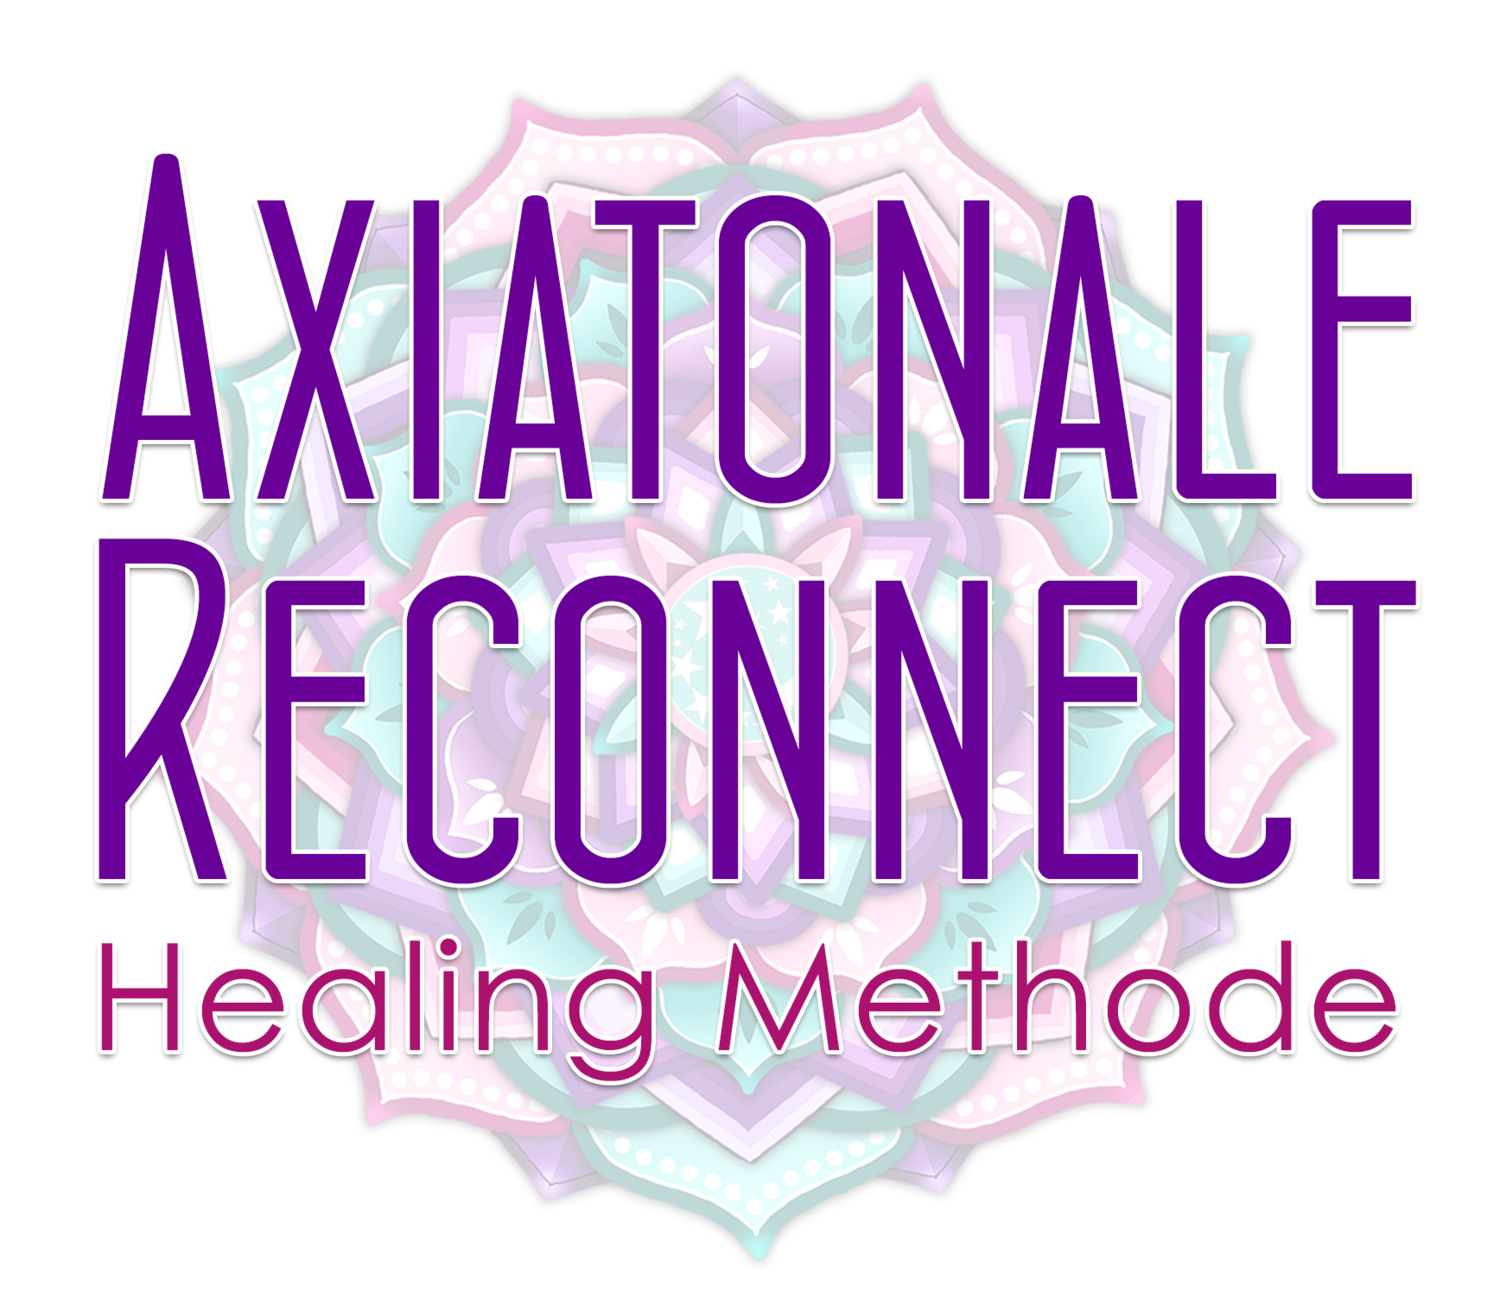 Axiatonale Reconnect Healing i.c.m. XoH Generator